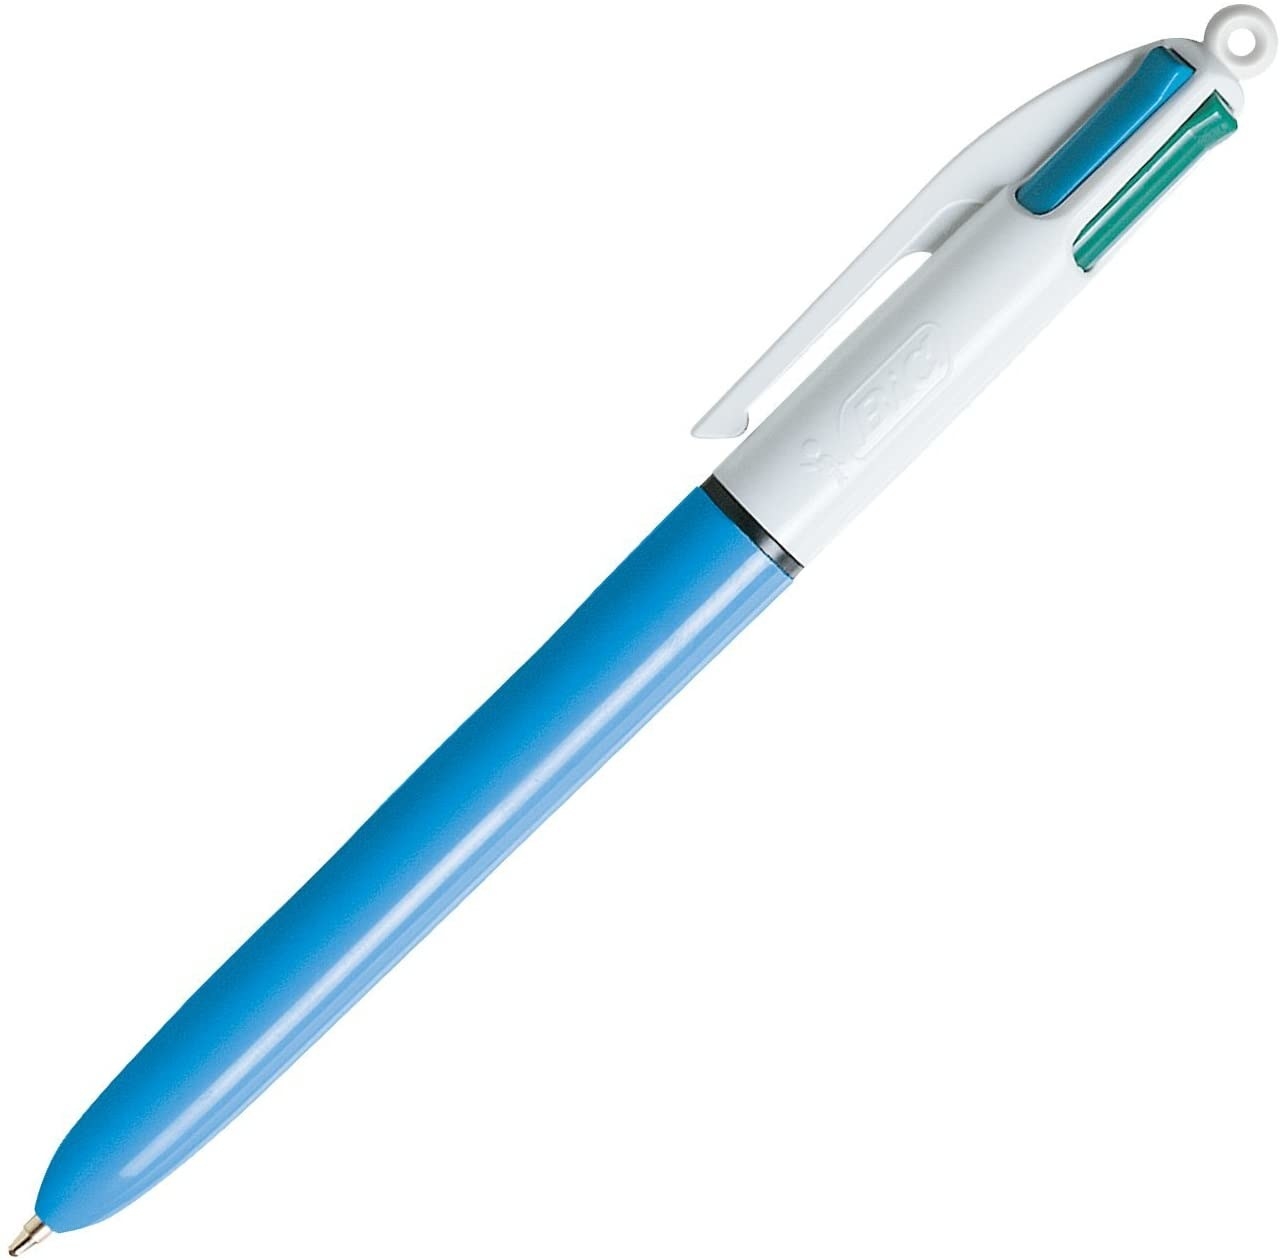 A retractable pen on a plain background